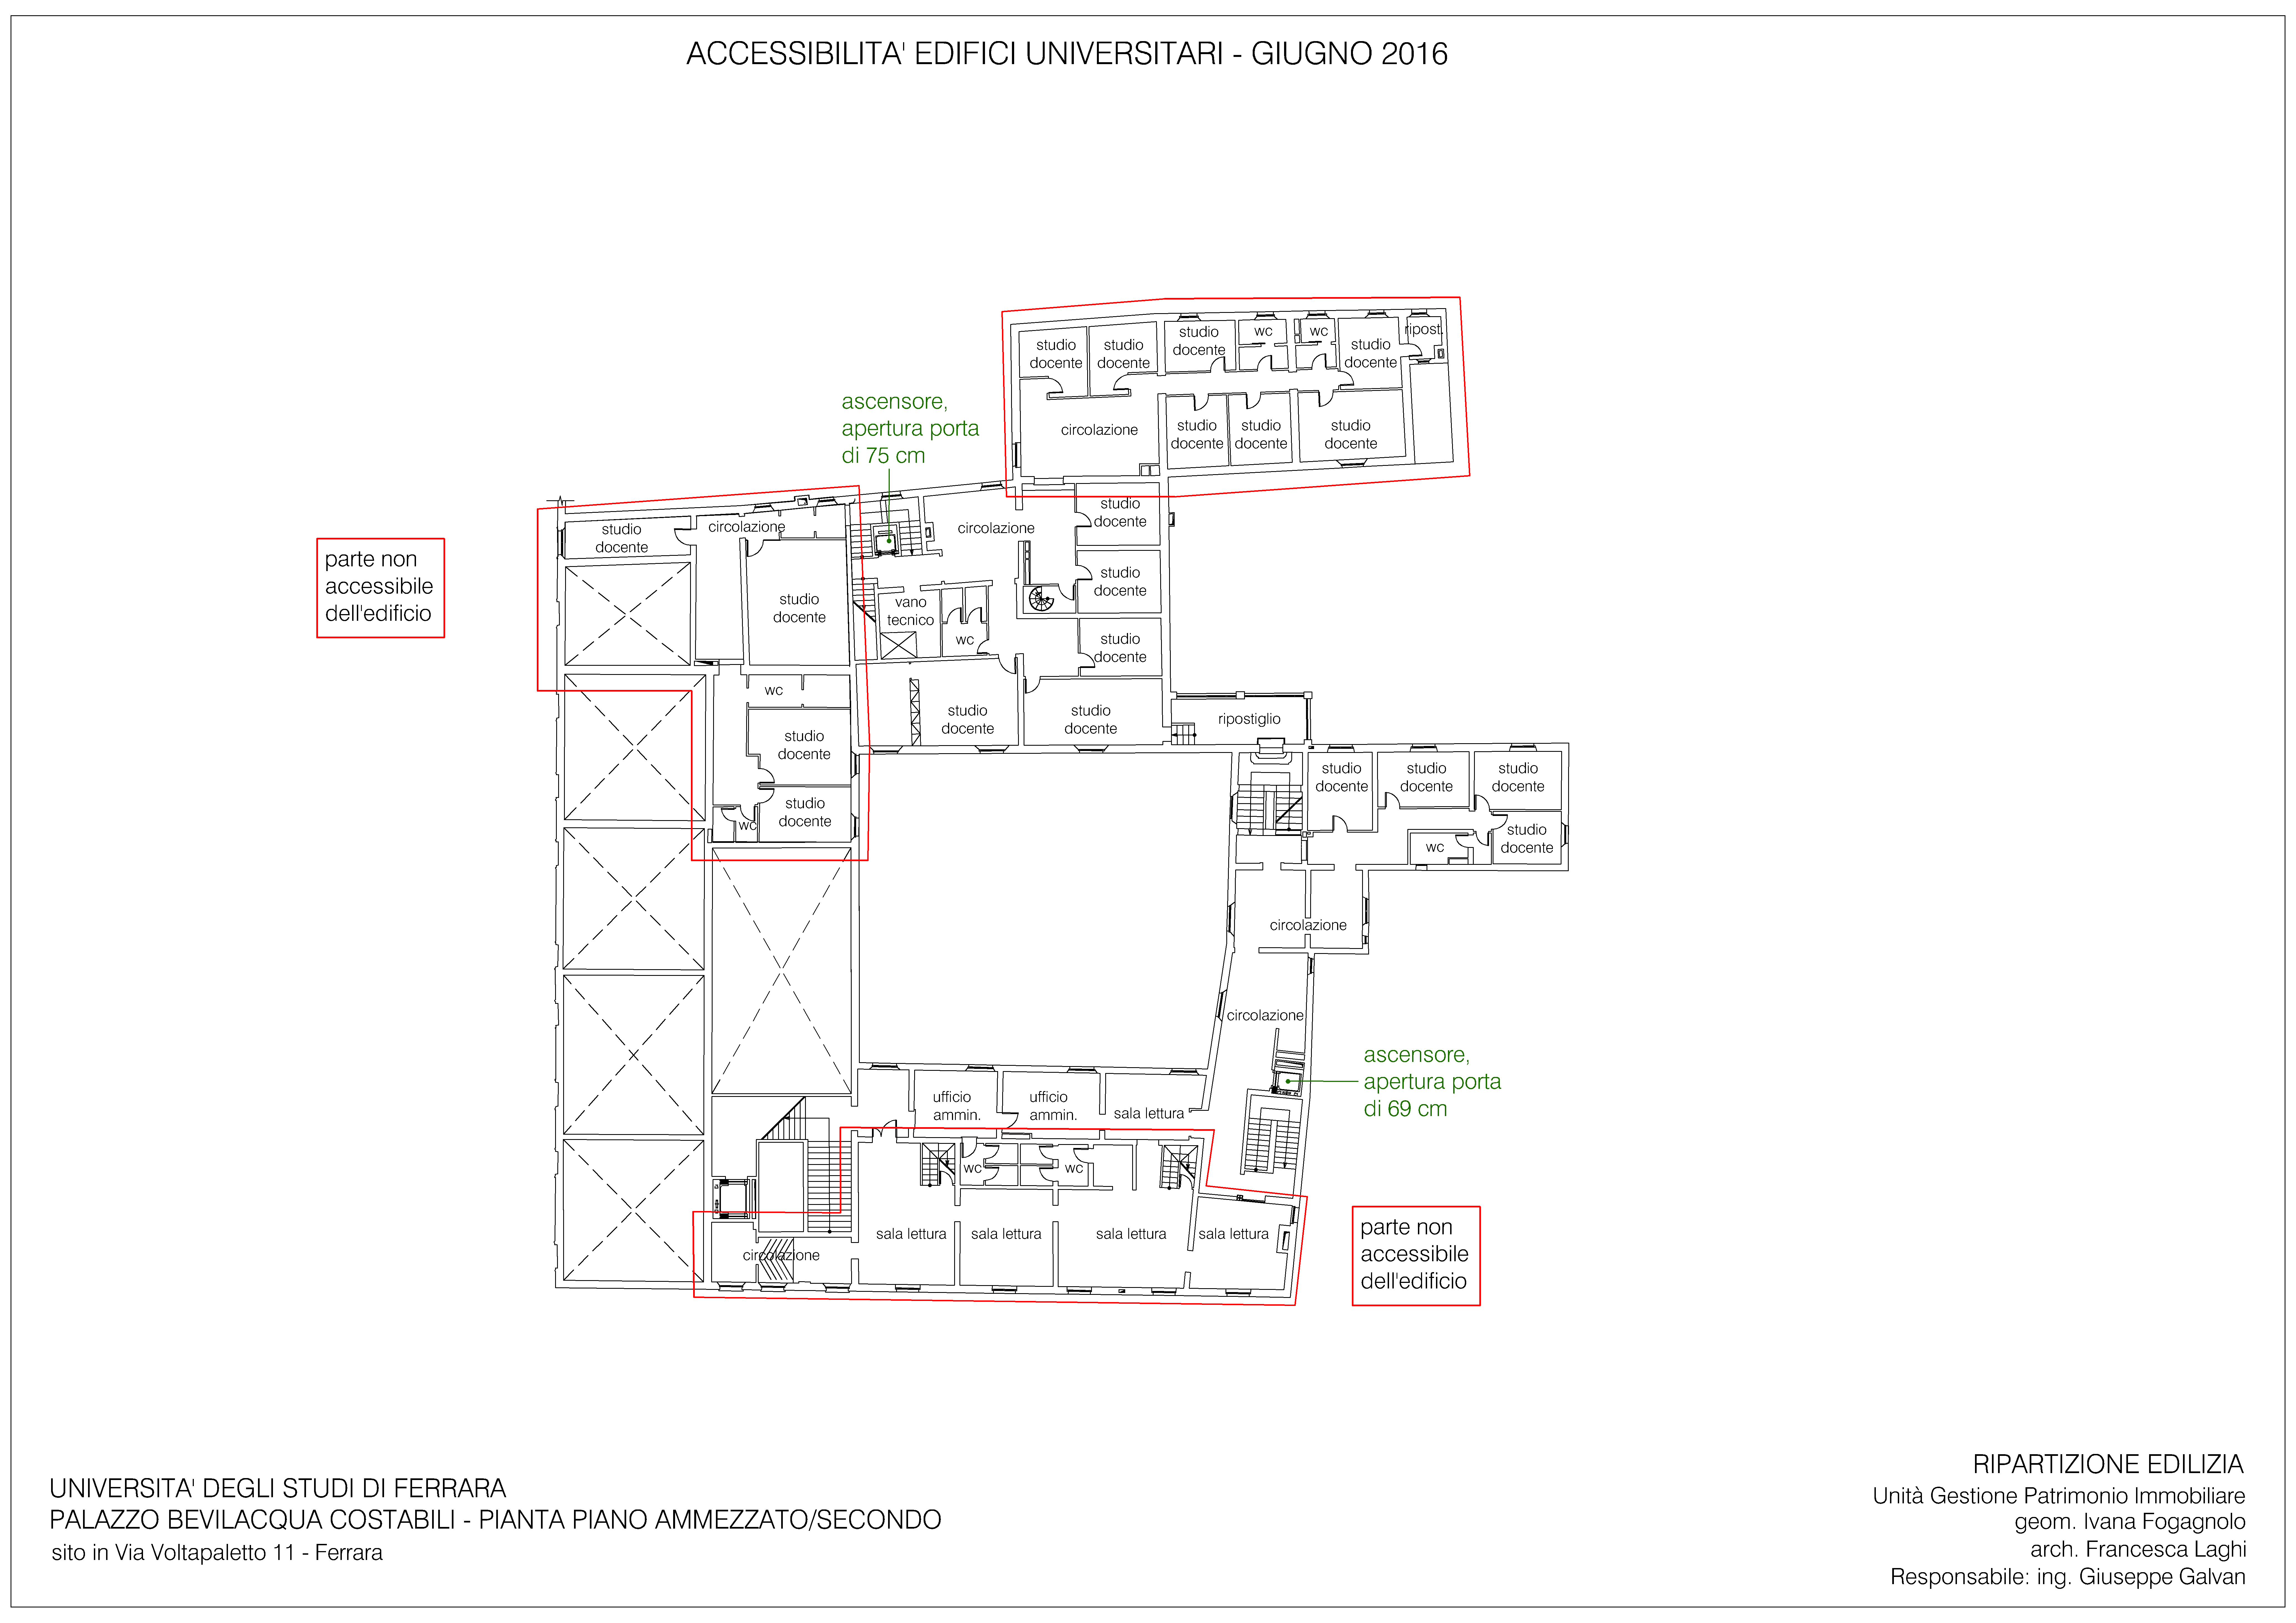 Palazzo Bevilacqua Costabili Piano Ammezzato/Secondo